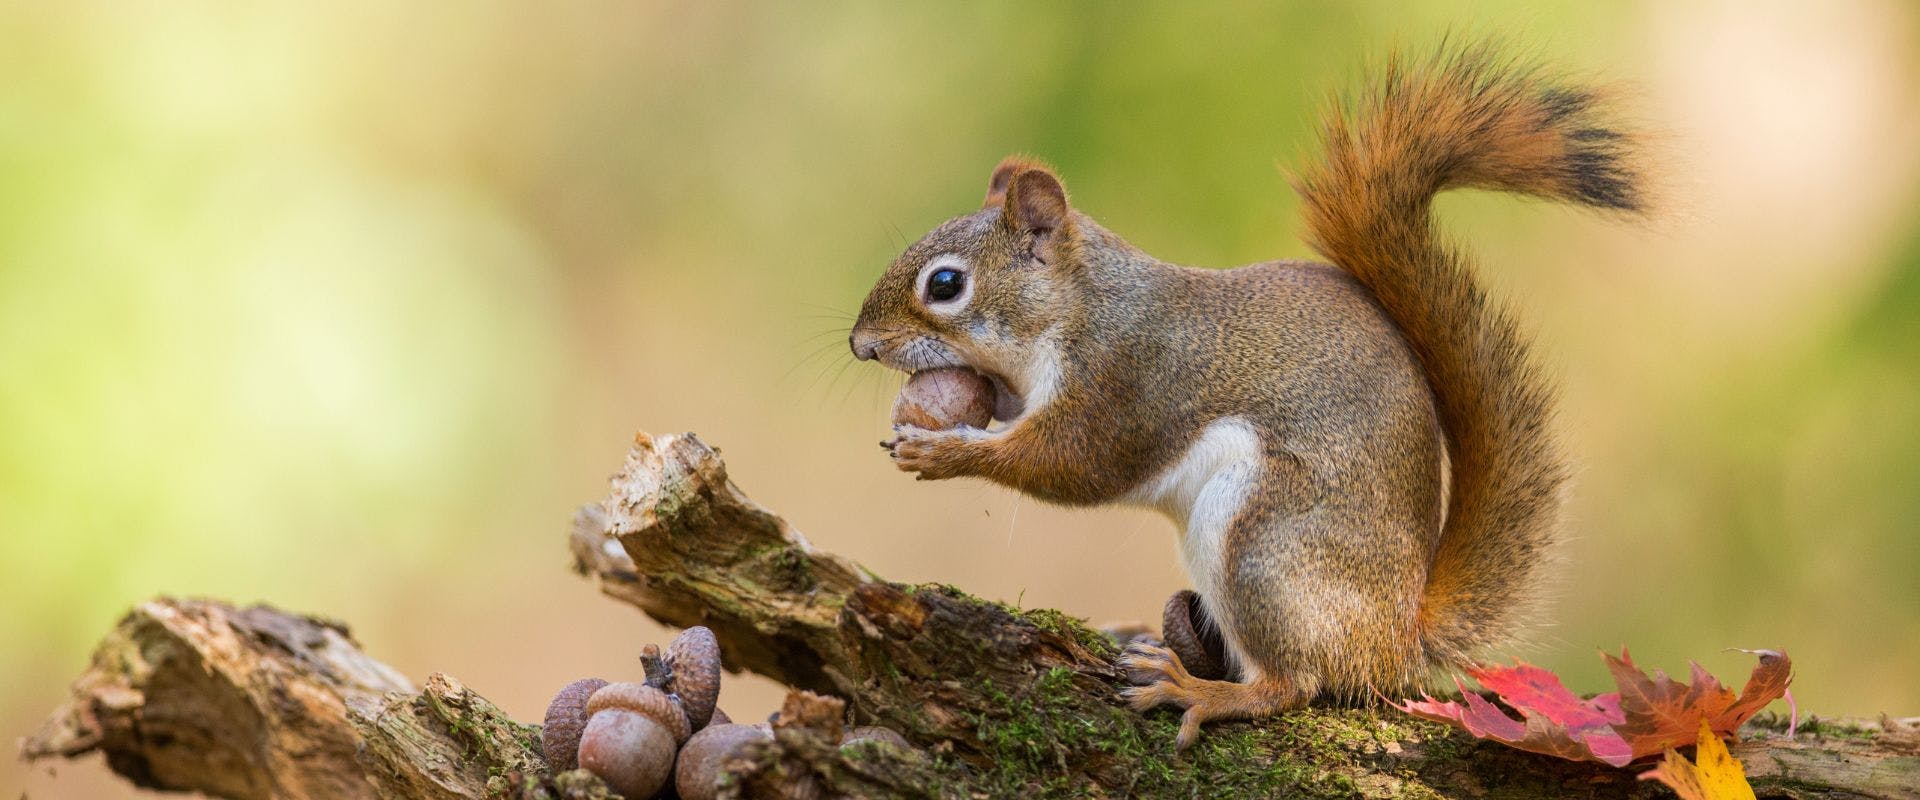 Squirrel eating acorns